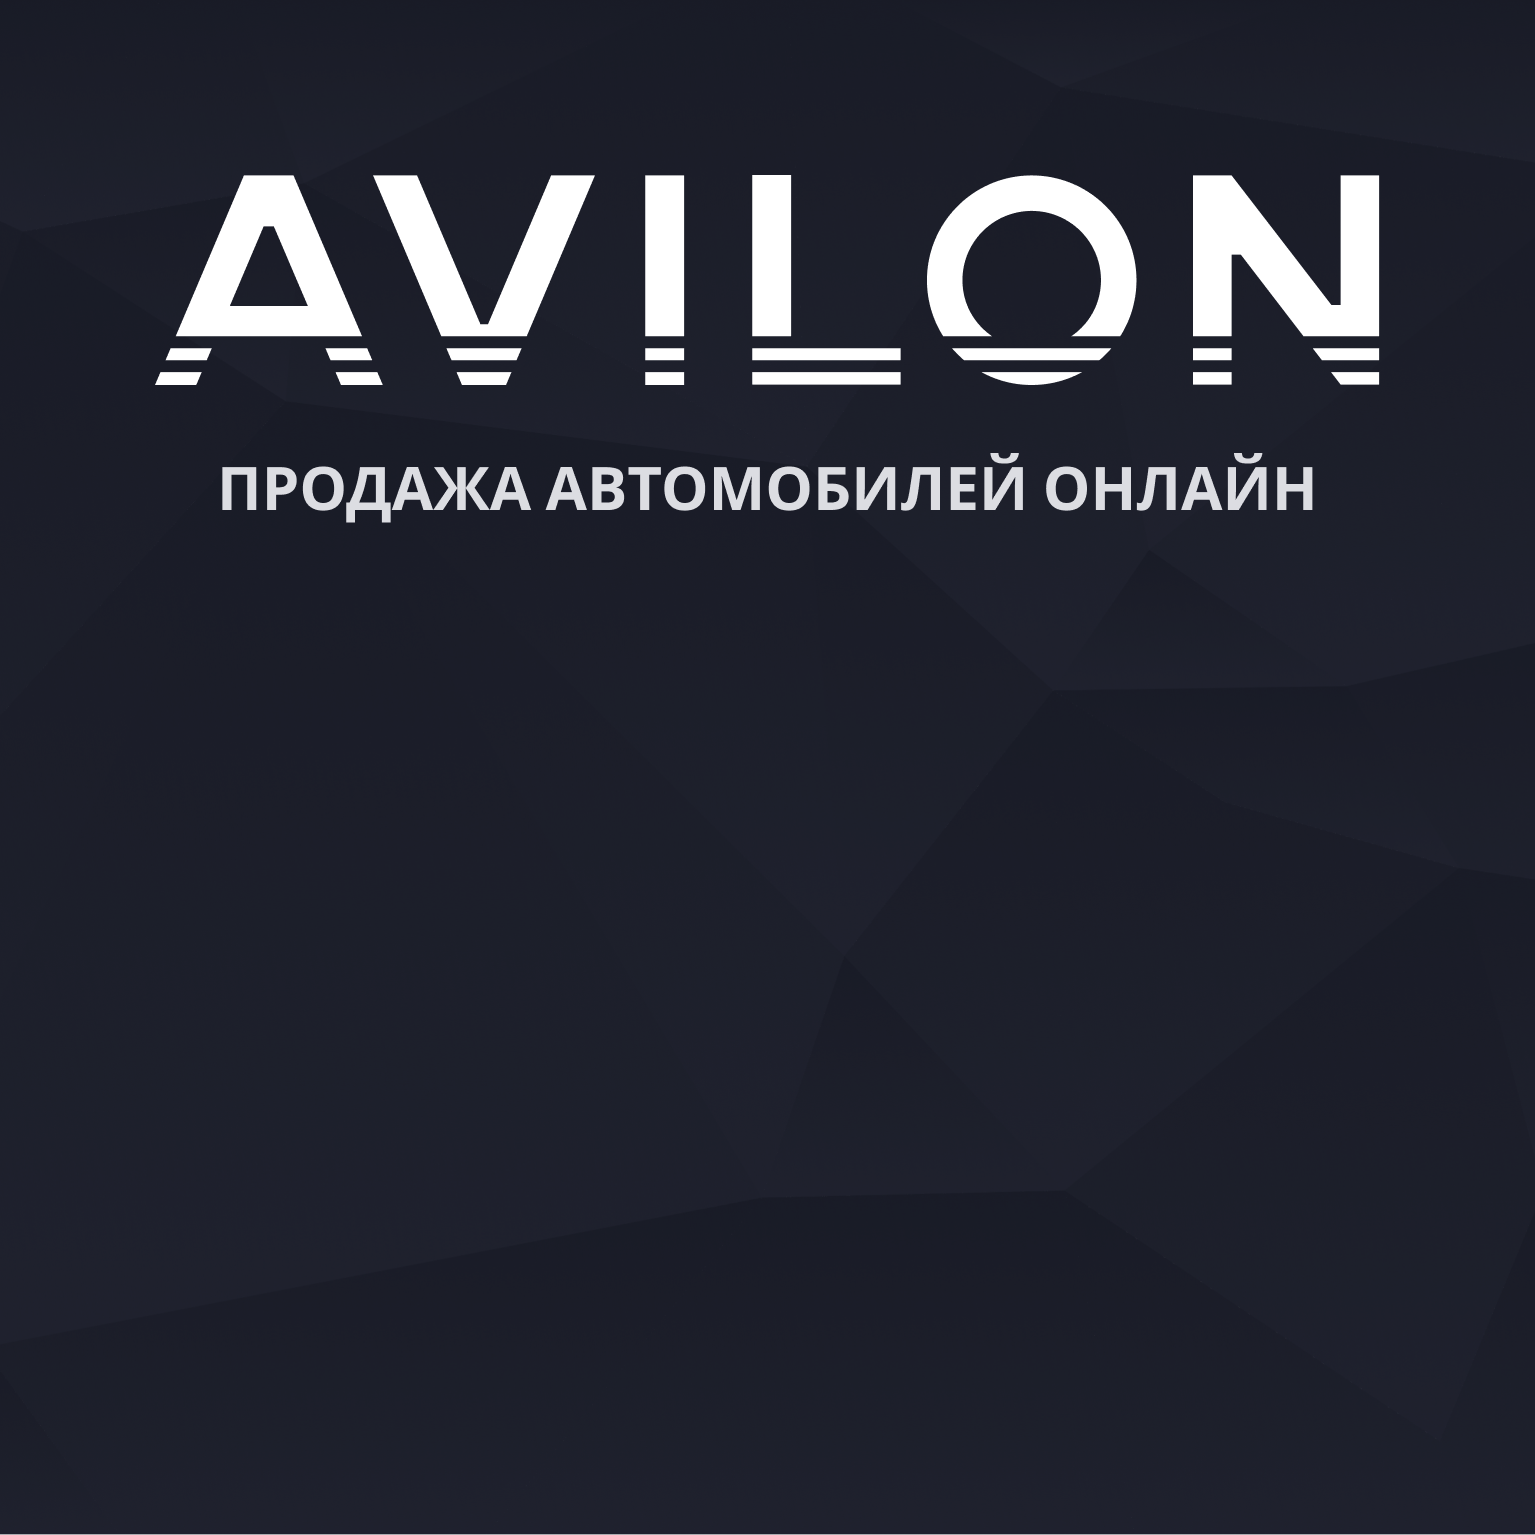 Хендай официальный дилер в Москве модельный ряд и цены 2019-2020 | Купить Хендай у официального дилера Авилон